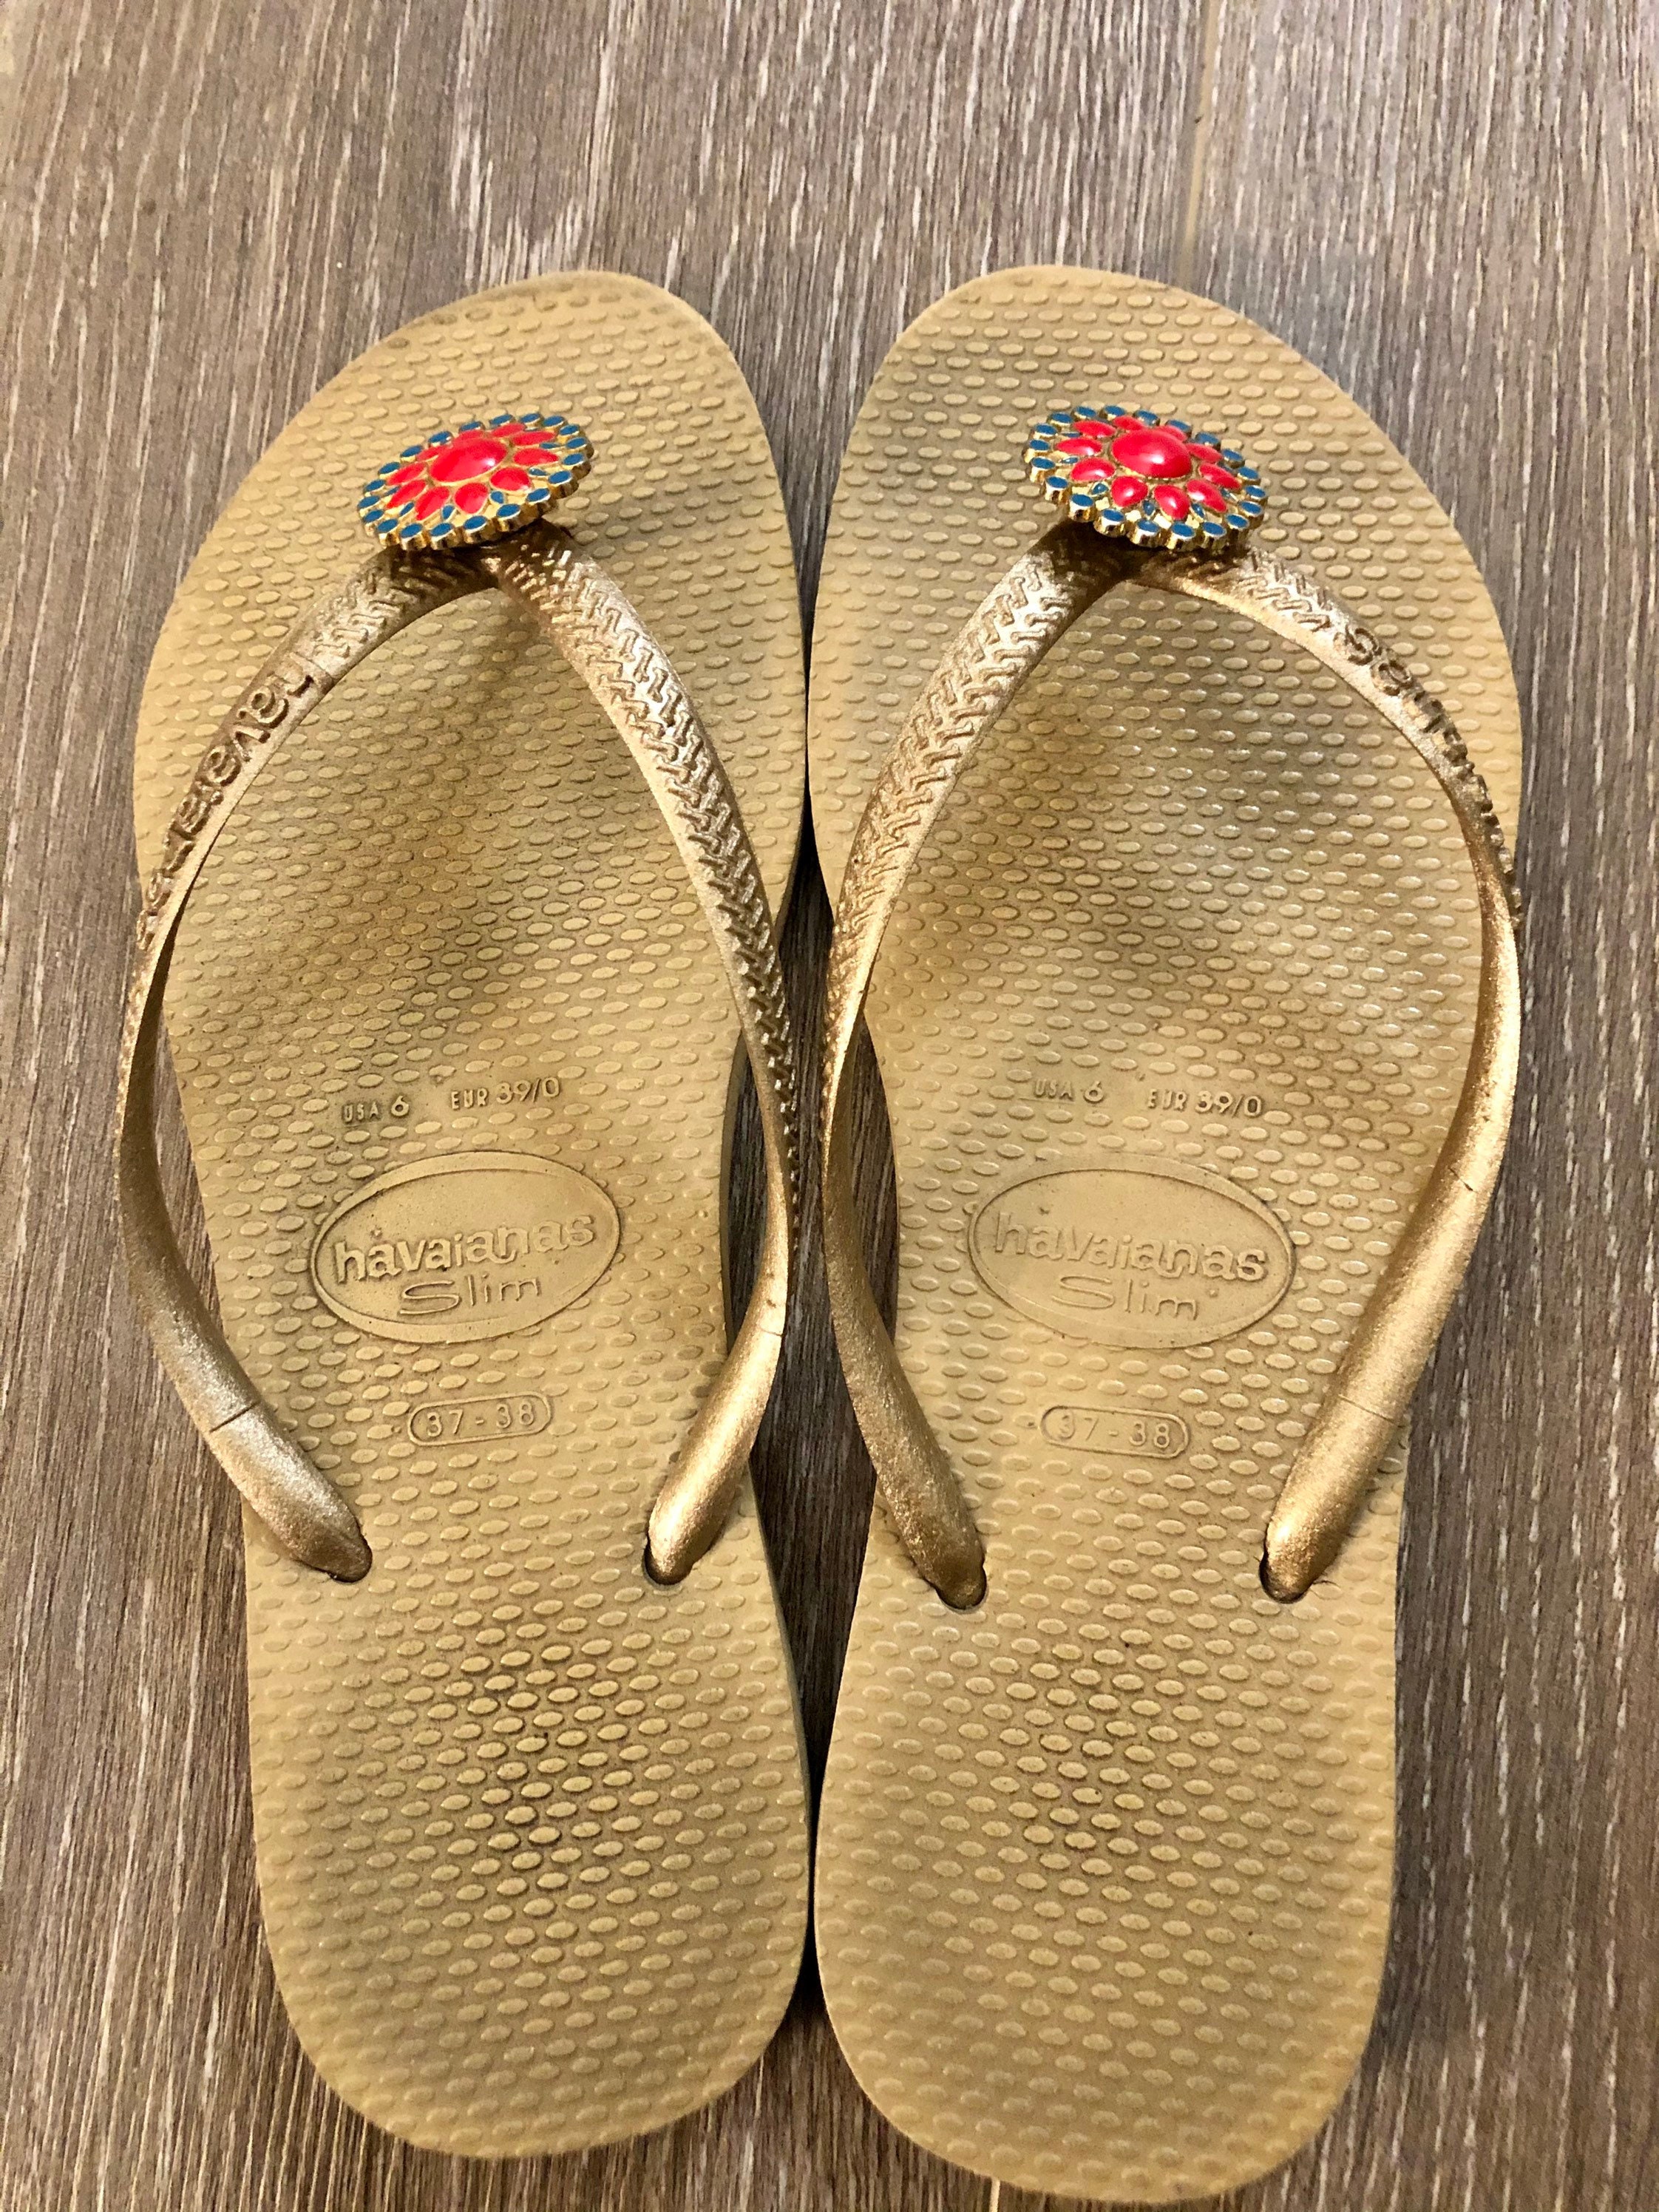 Worn / Used Havaianas Slim Sandals -  Australia